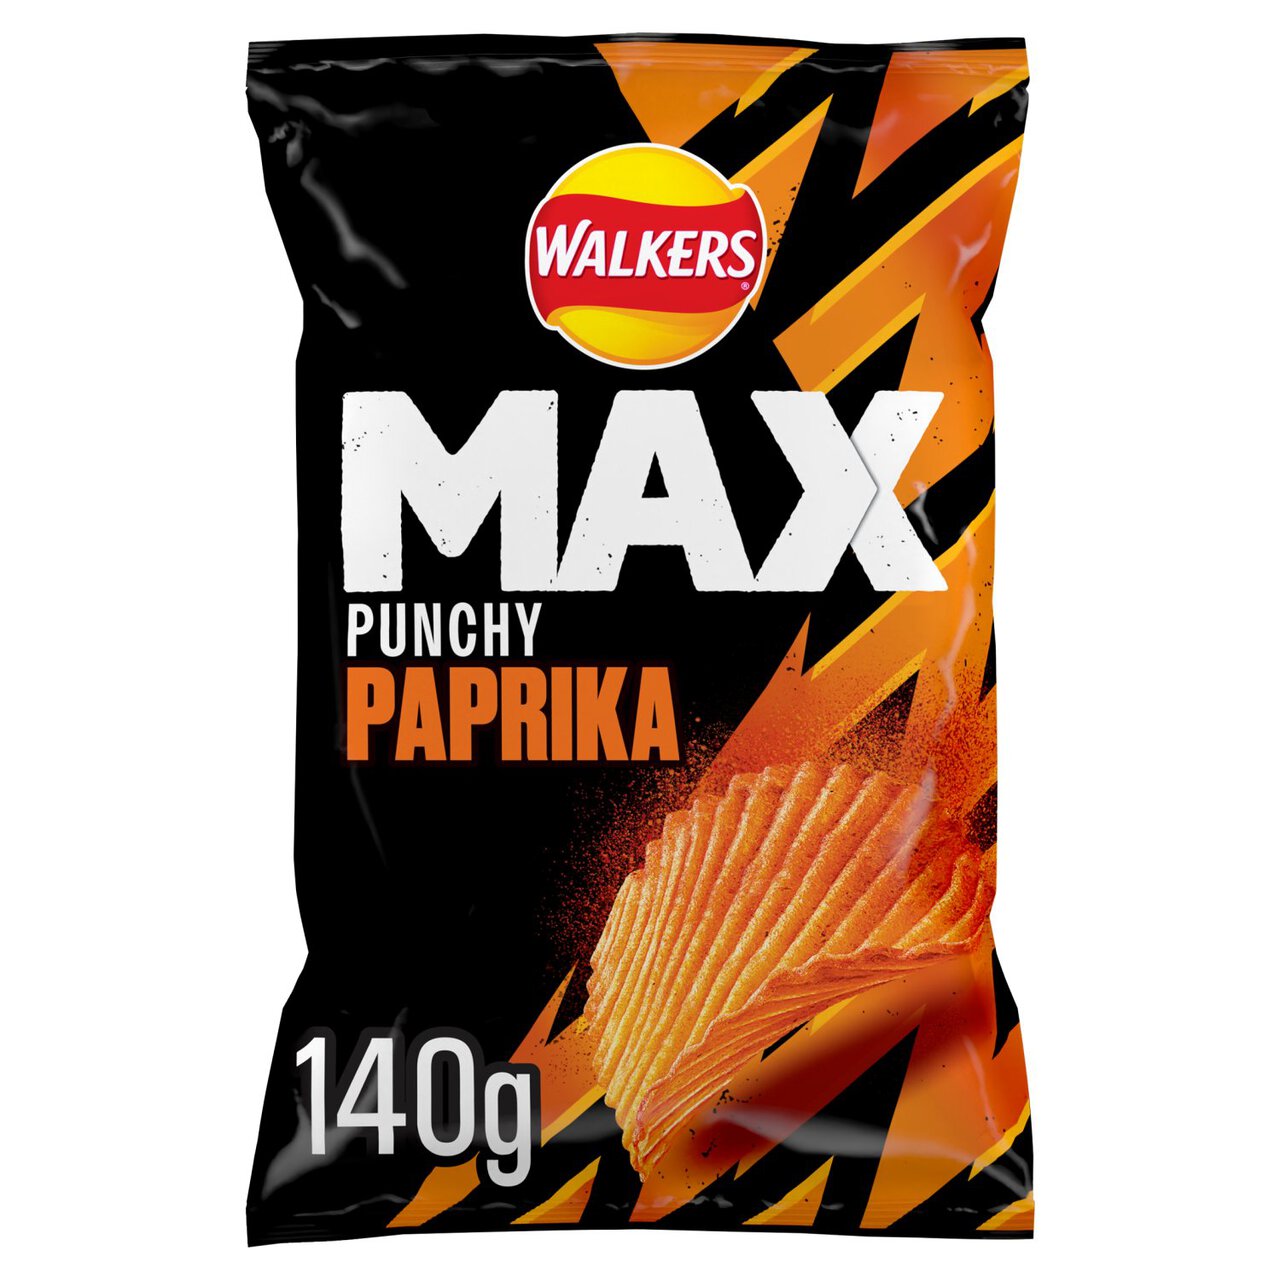 Walkers Max Punchy Paprika Sharing Bag Crisps 140g